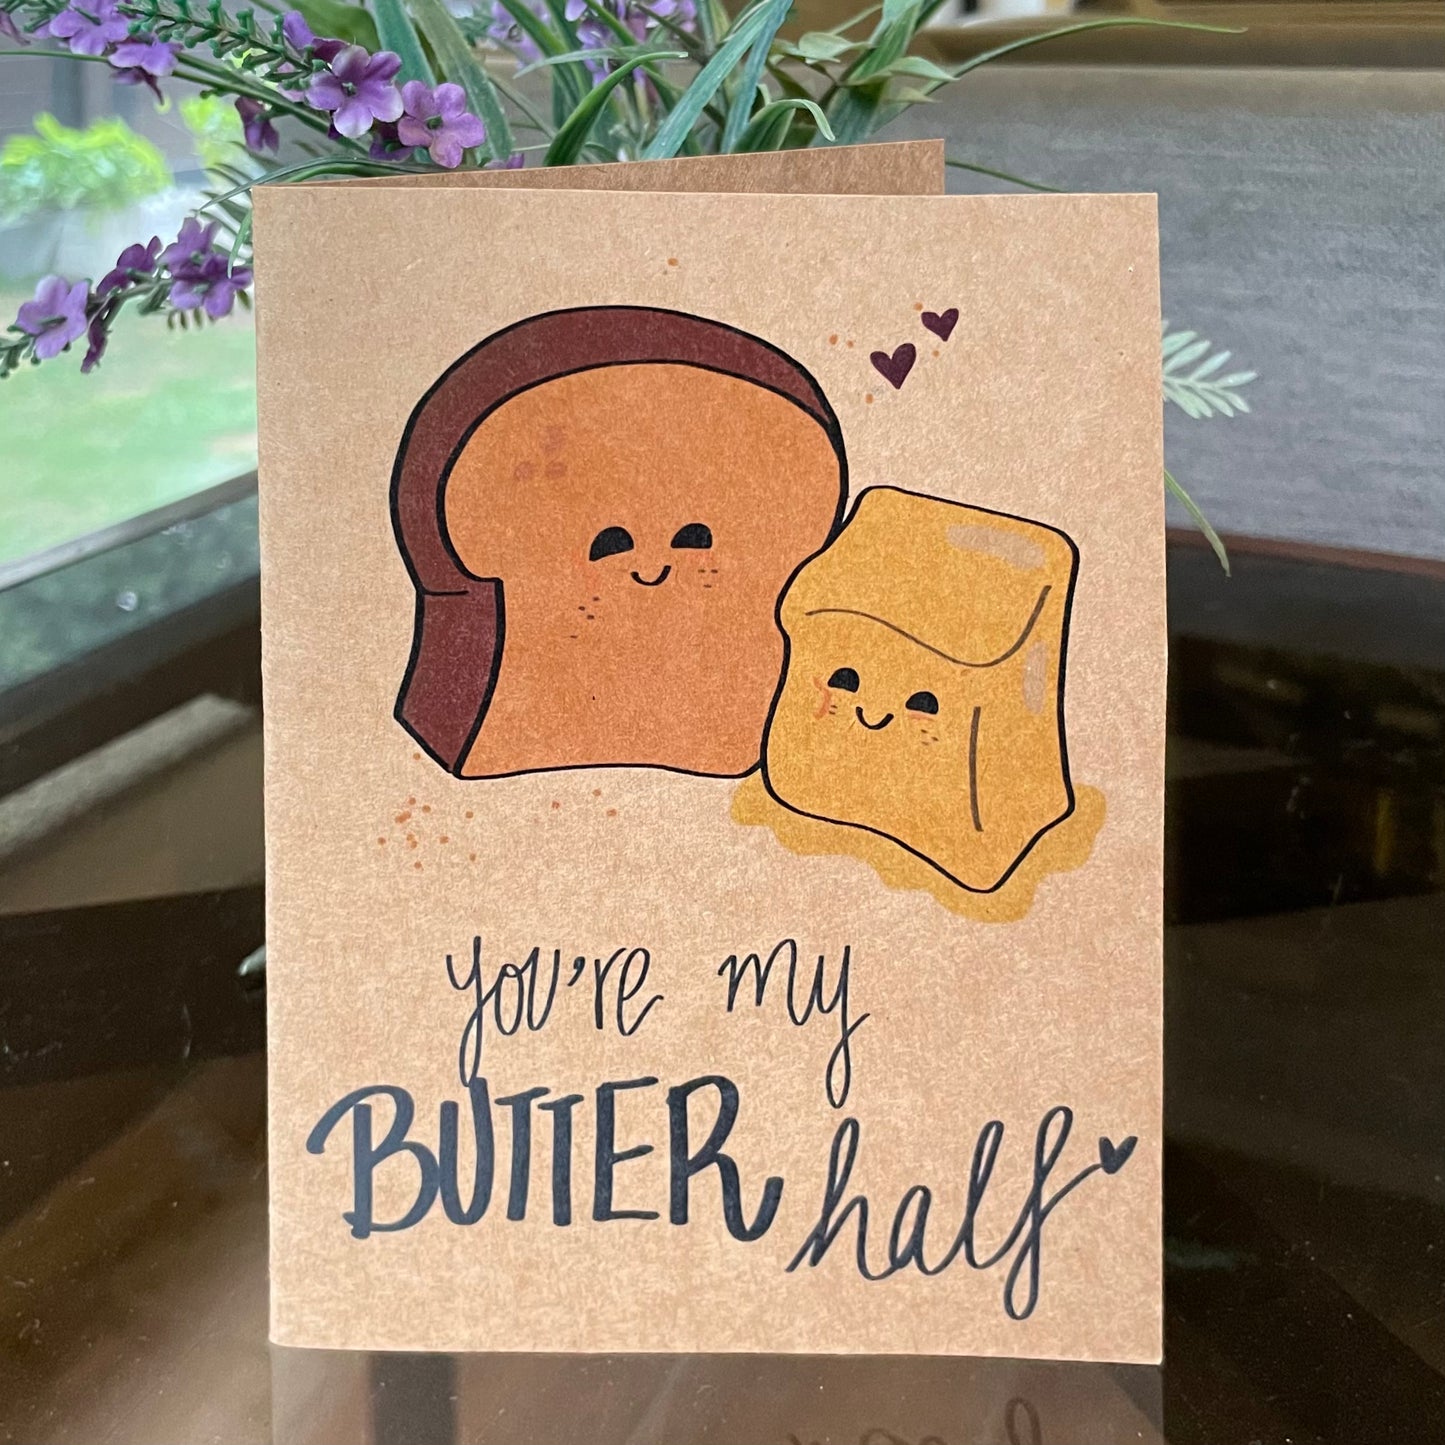 “Butter Half” Card